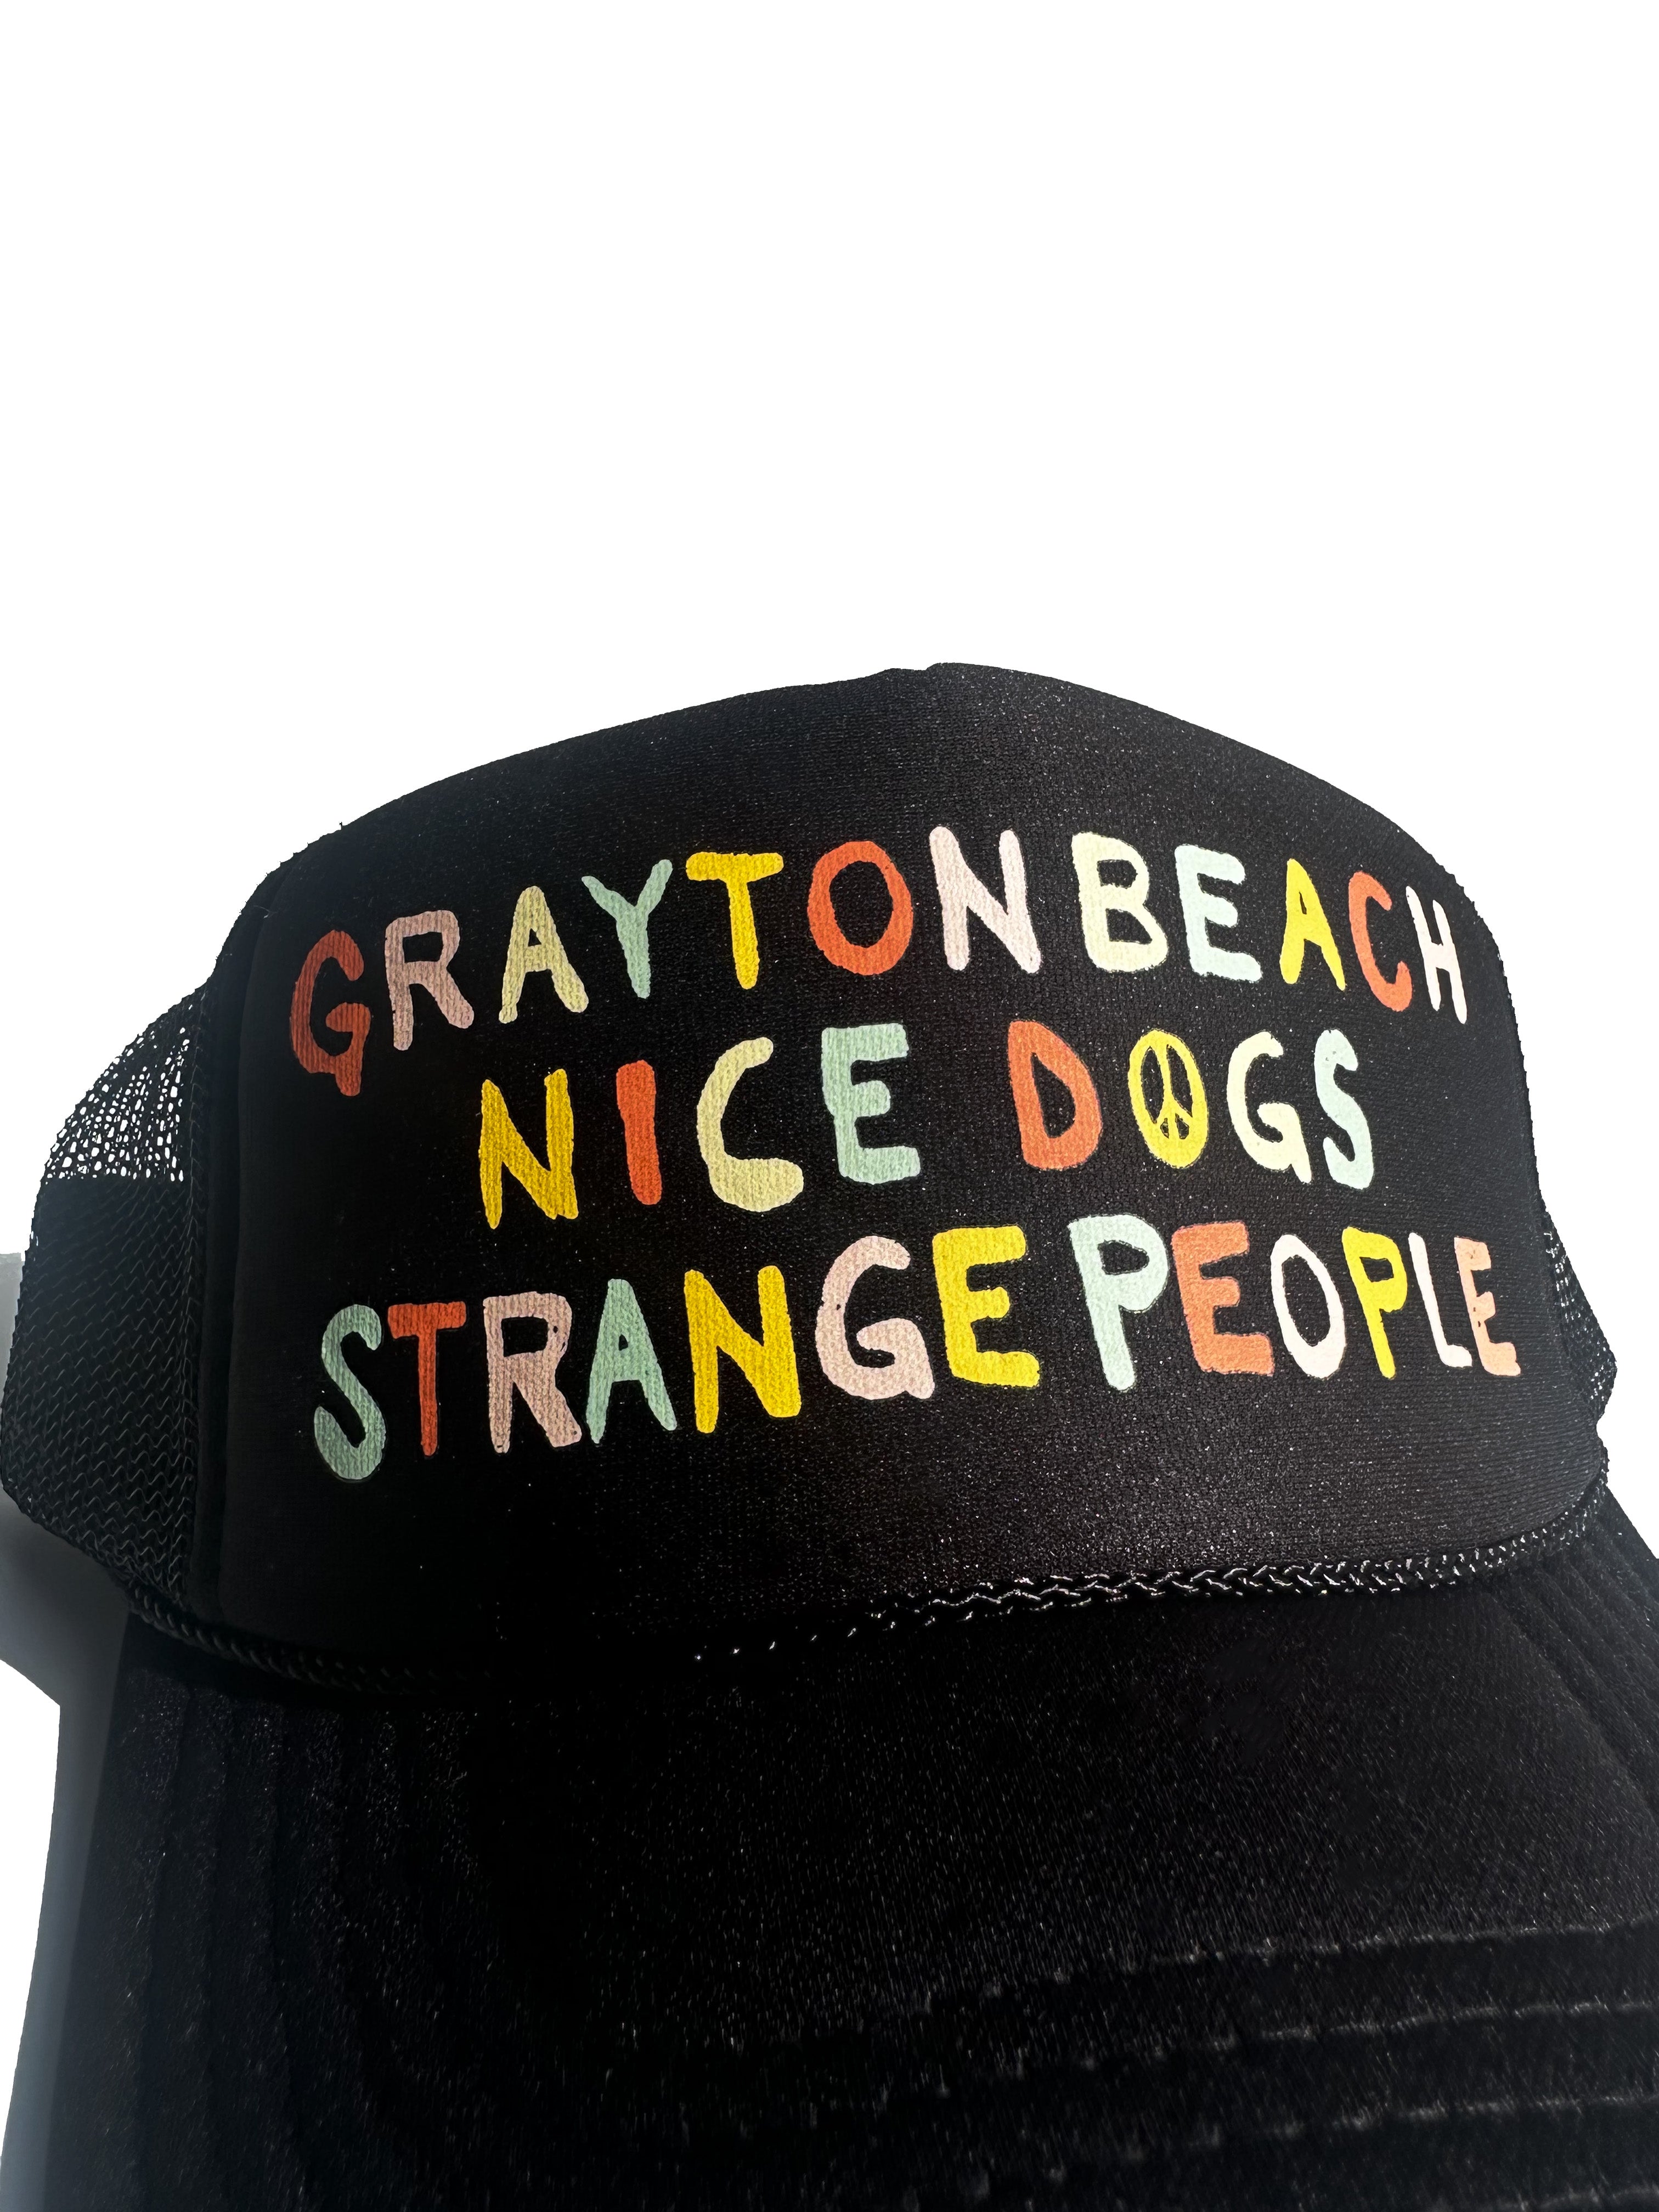 Nice Dogs Strange People Trucker Hat